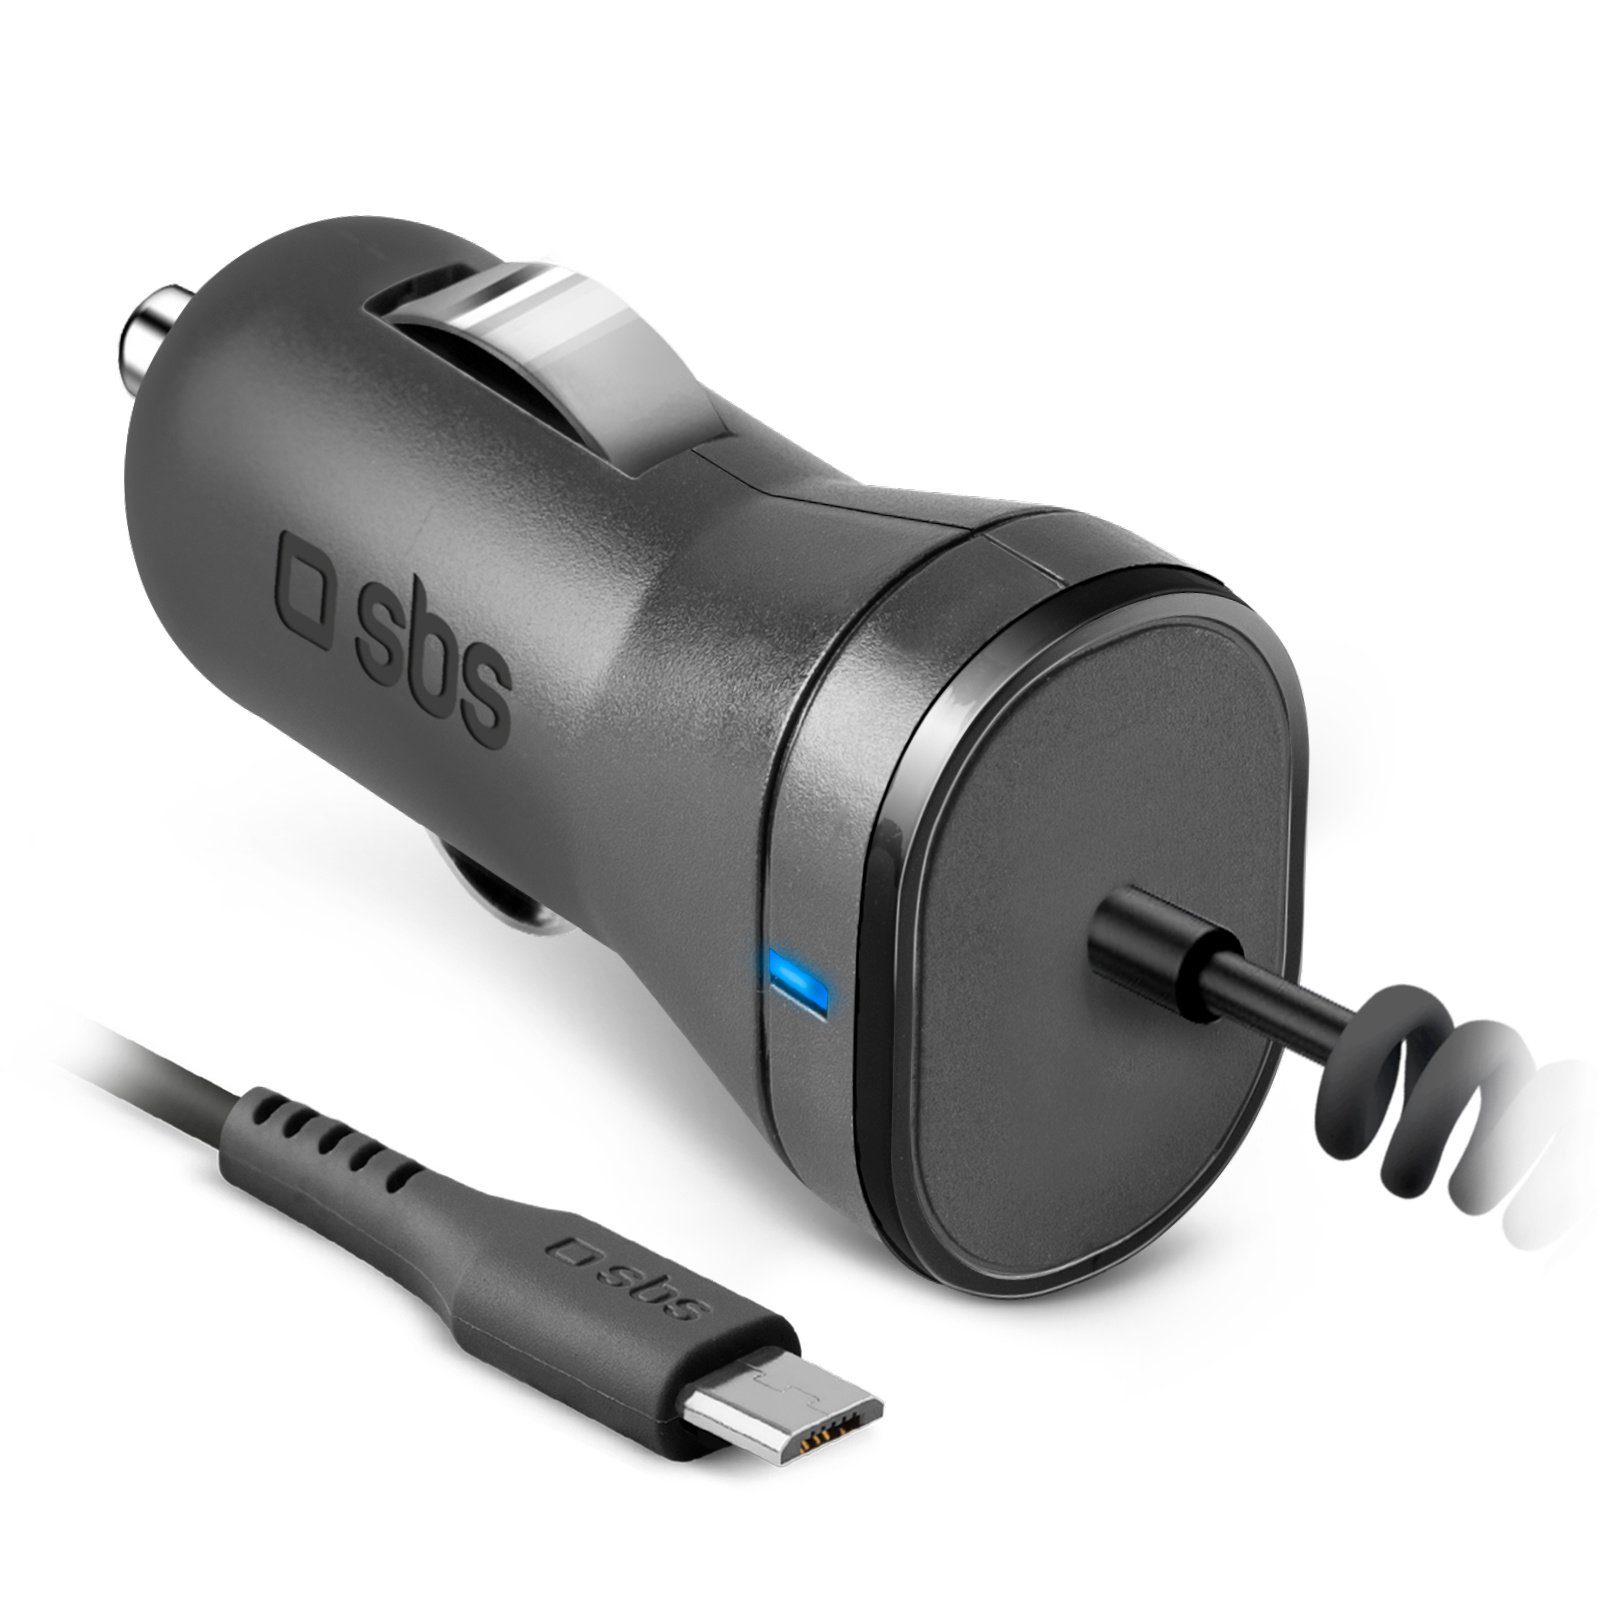 sbs »SBS Kfz Zigarettenanzünder Ladegerät mit Micro USB 1000 mAh« USB-Ladegerät  online kaufen | OTTO